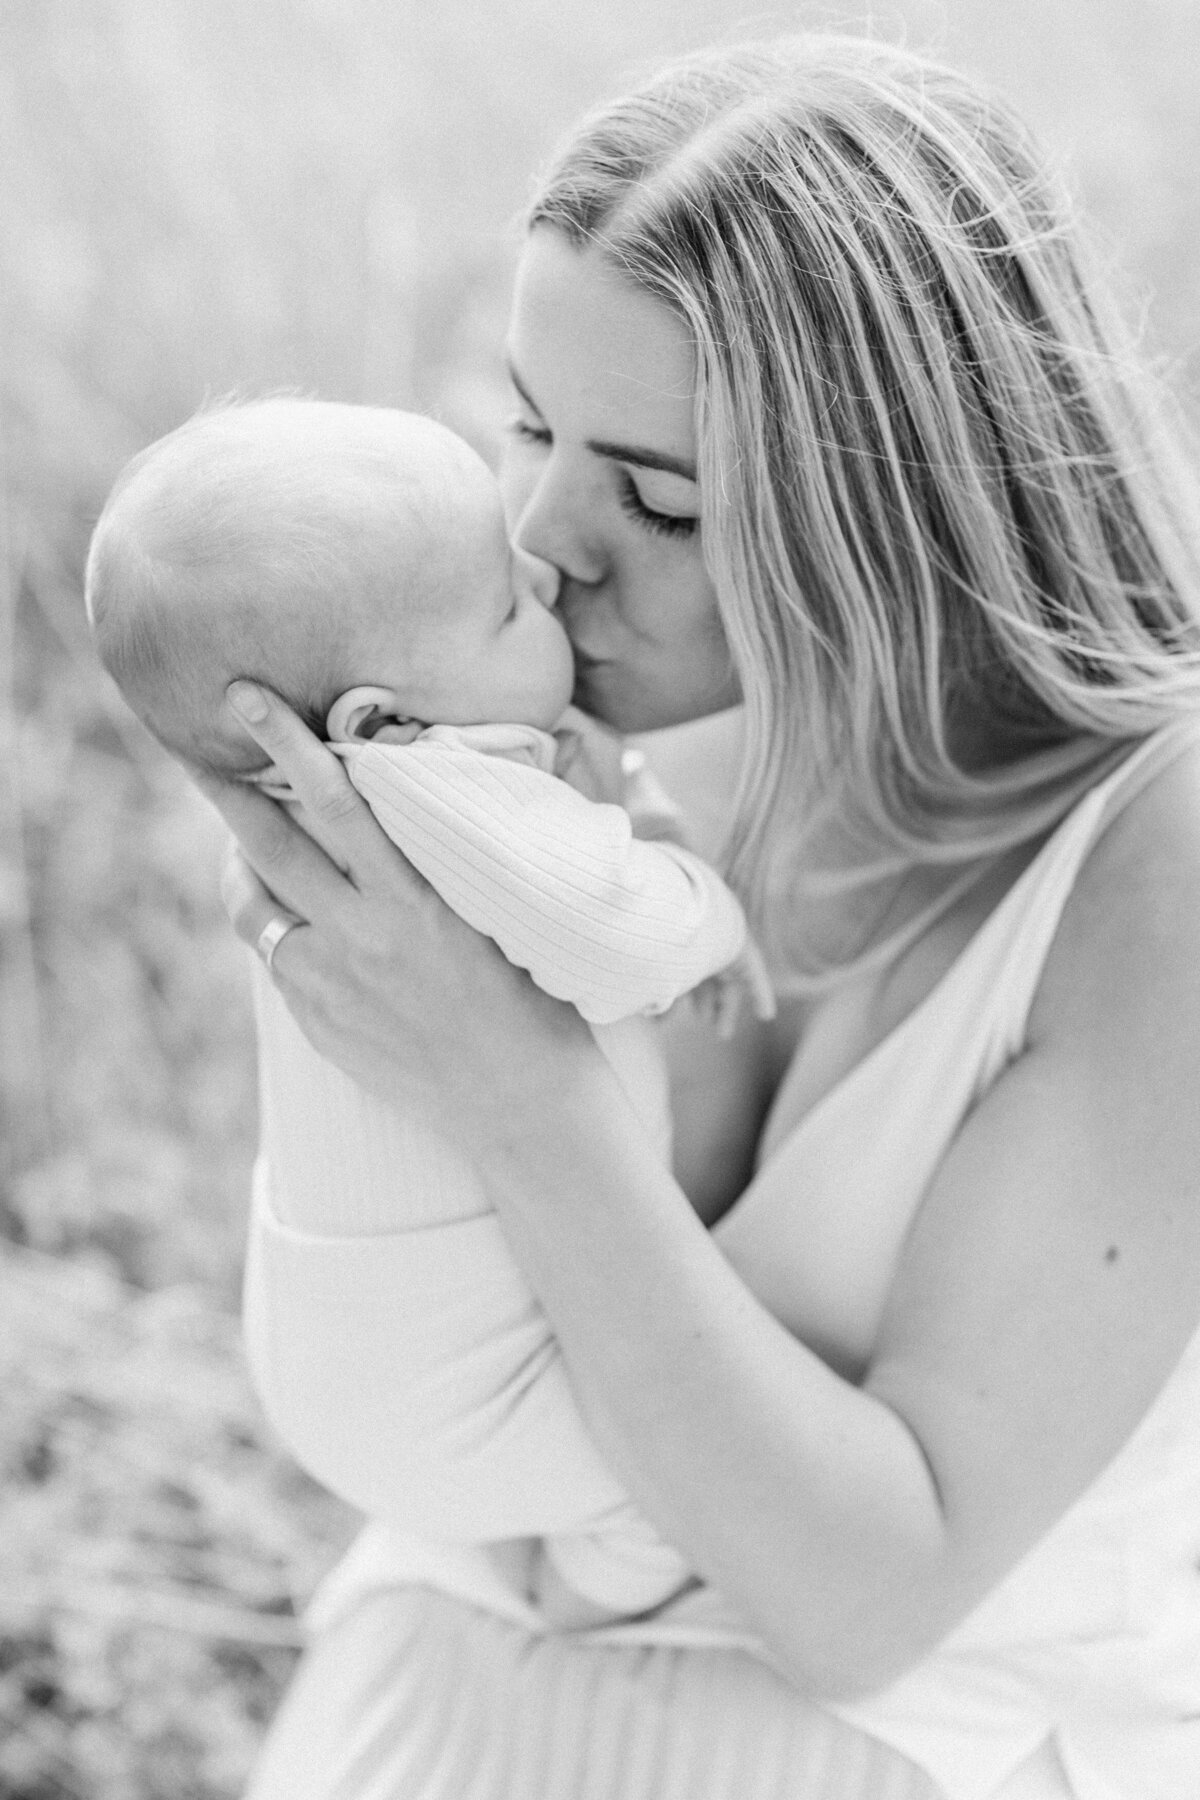 En mamma ger sin bebis en puss på munnen